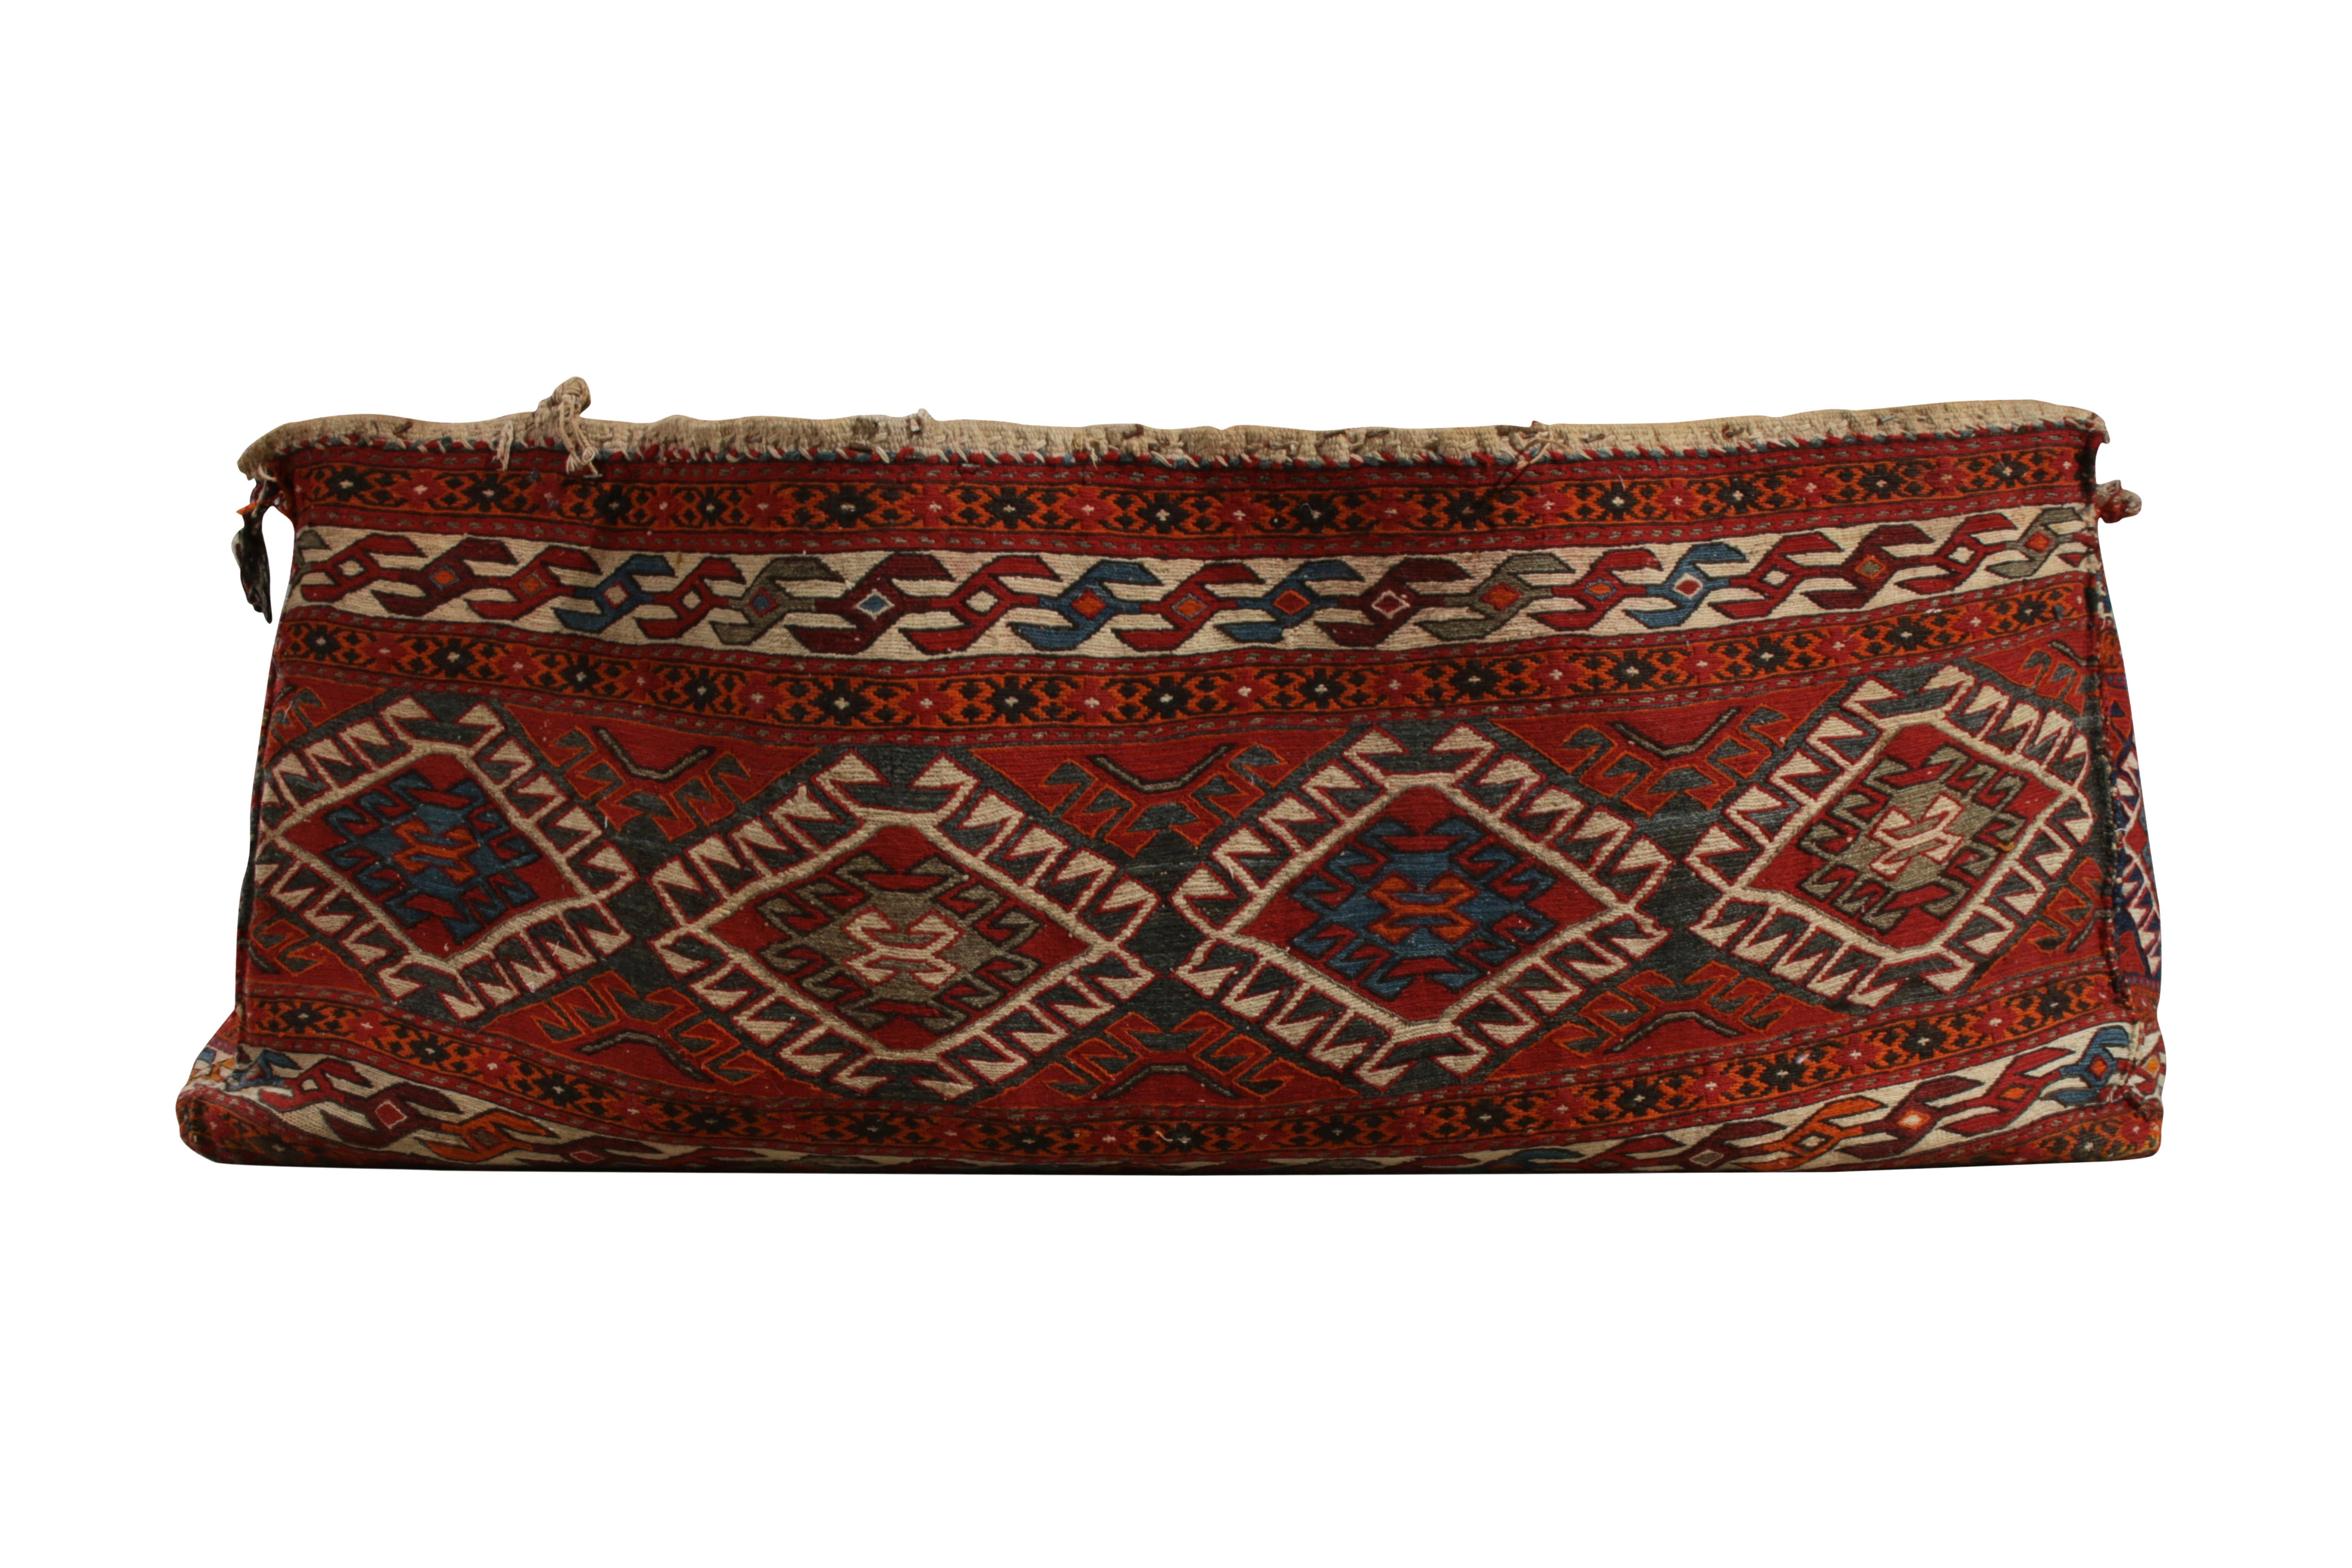 Eine Flachgewebe-Tasche aus Persien aus der Mitte des 19. Jahrhunderts, die jetzt in die Antique & Vintage Collection von Rug & Kilim aufgenommen wurde. Handgewebt aus Wolle mit feinem Qualitätsgarn in der ursprünglichen Tasche (in der persischen